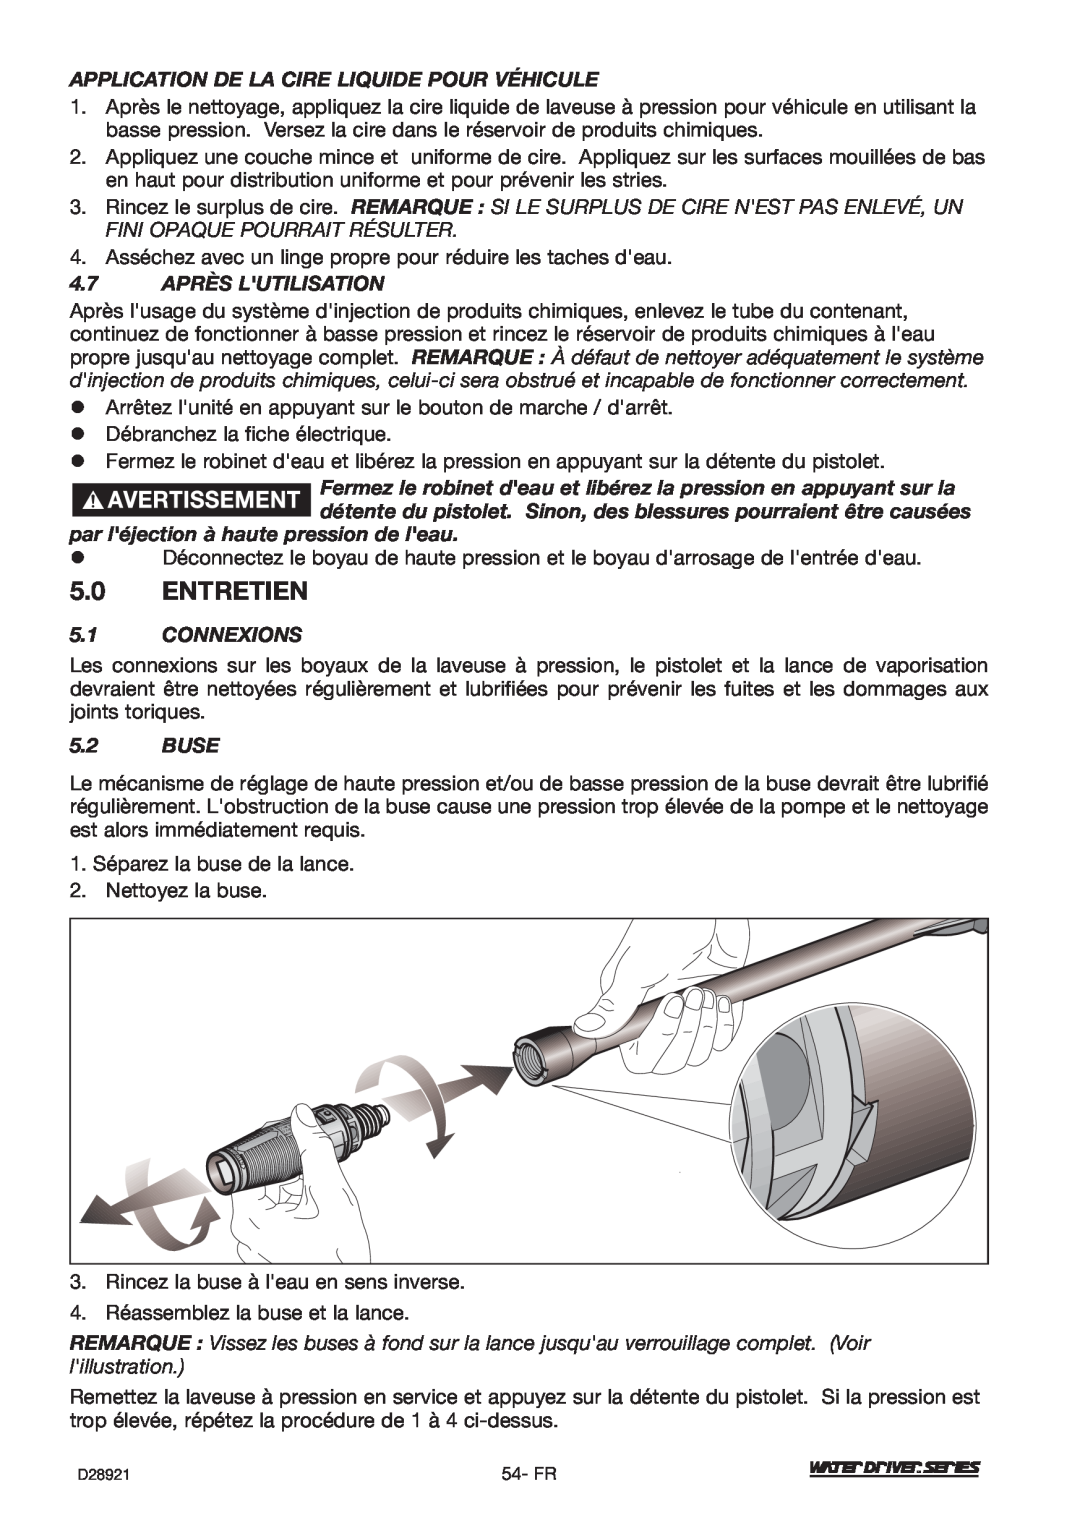 DeVillbiss Air Power Company WD1600E Entretien, Application De La Cire Liquide Pour Véhicule, 4.7 APRÈS LUTILISATION, Buse 